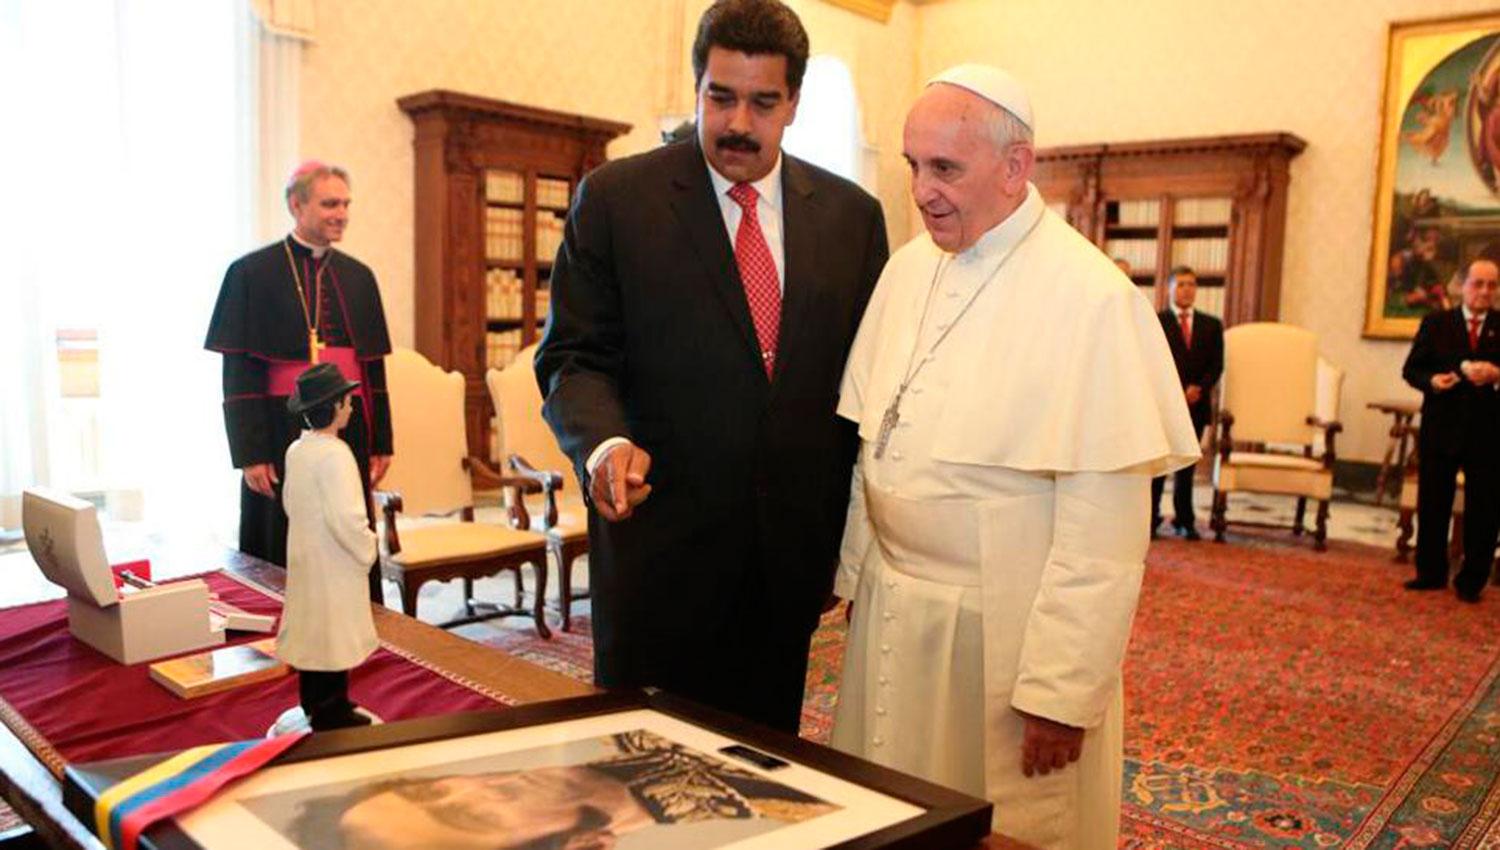 2013. Otra de las visitas del actual presidente venezolano al Sumo Pontífice.